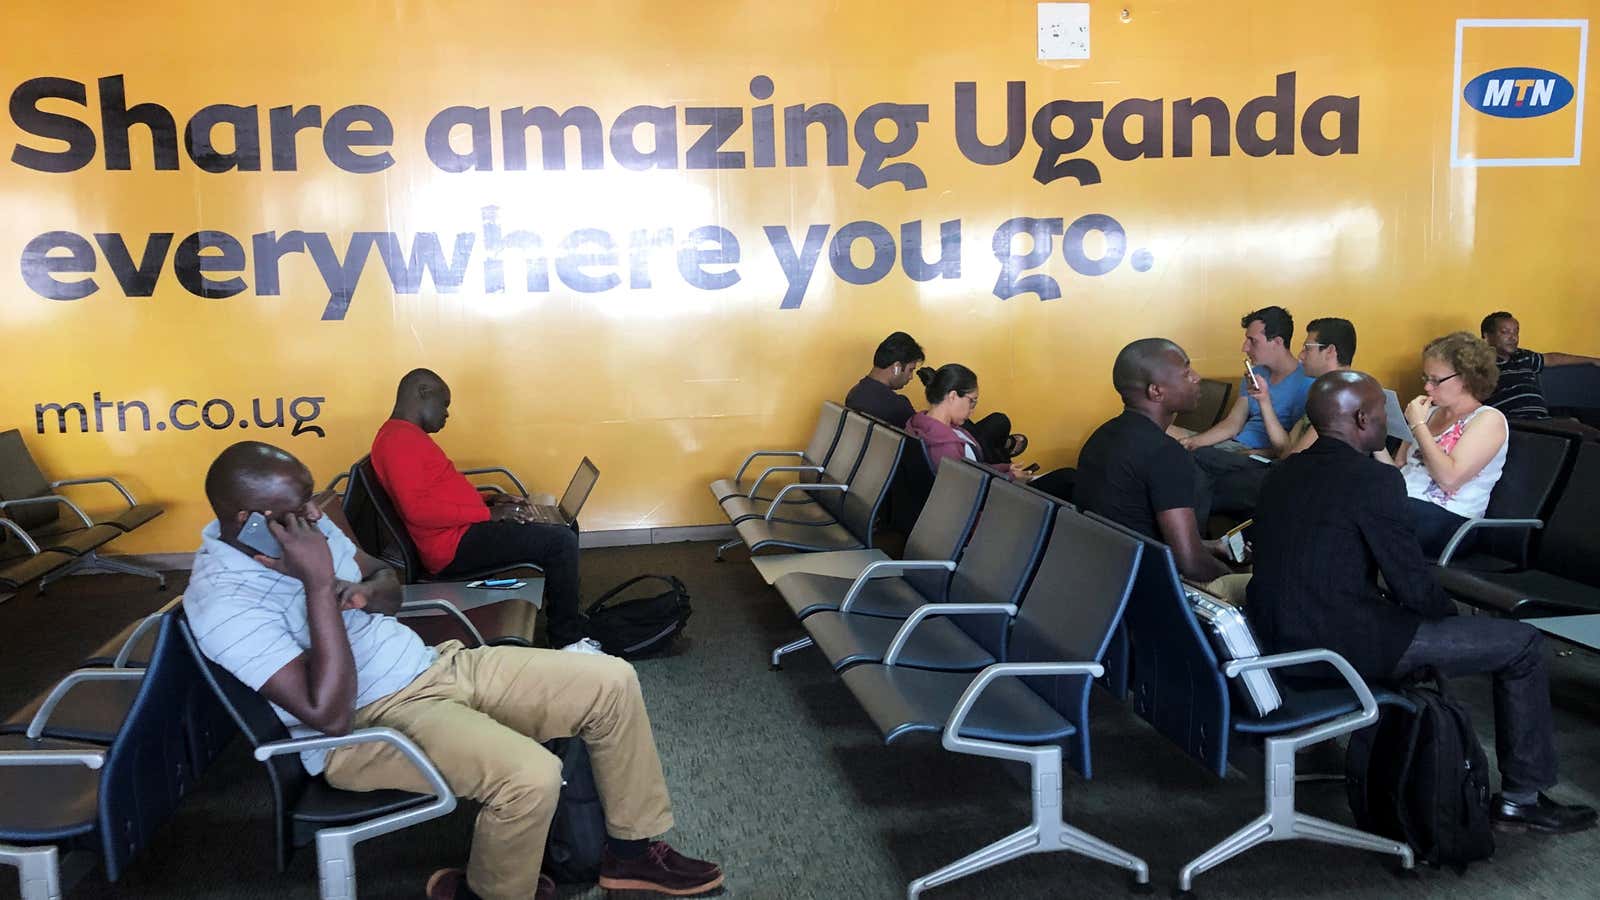 An MTN billboard in Entebbe international airport in Entebbe, Uganda